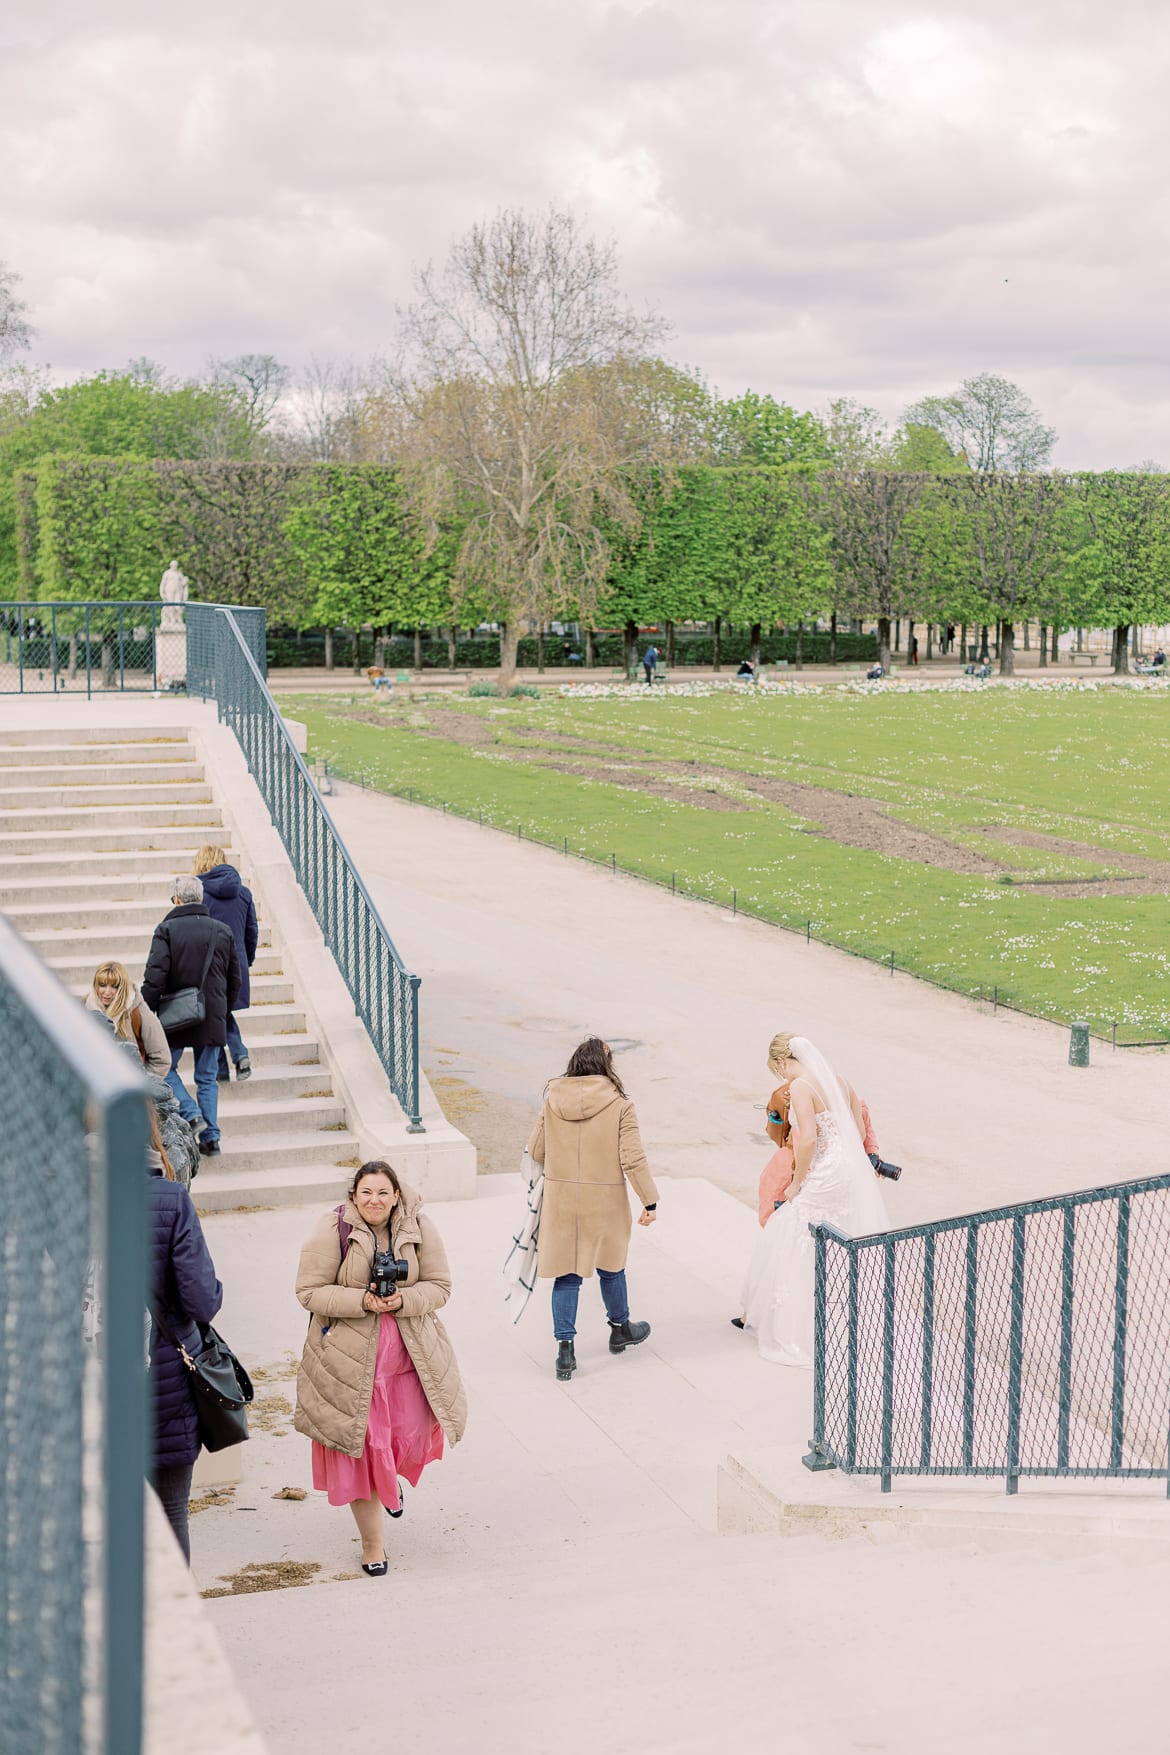 Fotografinnen und ein Hochzeitspaar auf einer Treppe in einem Park